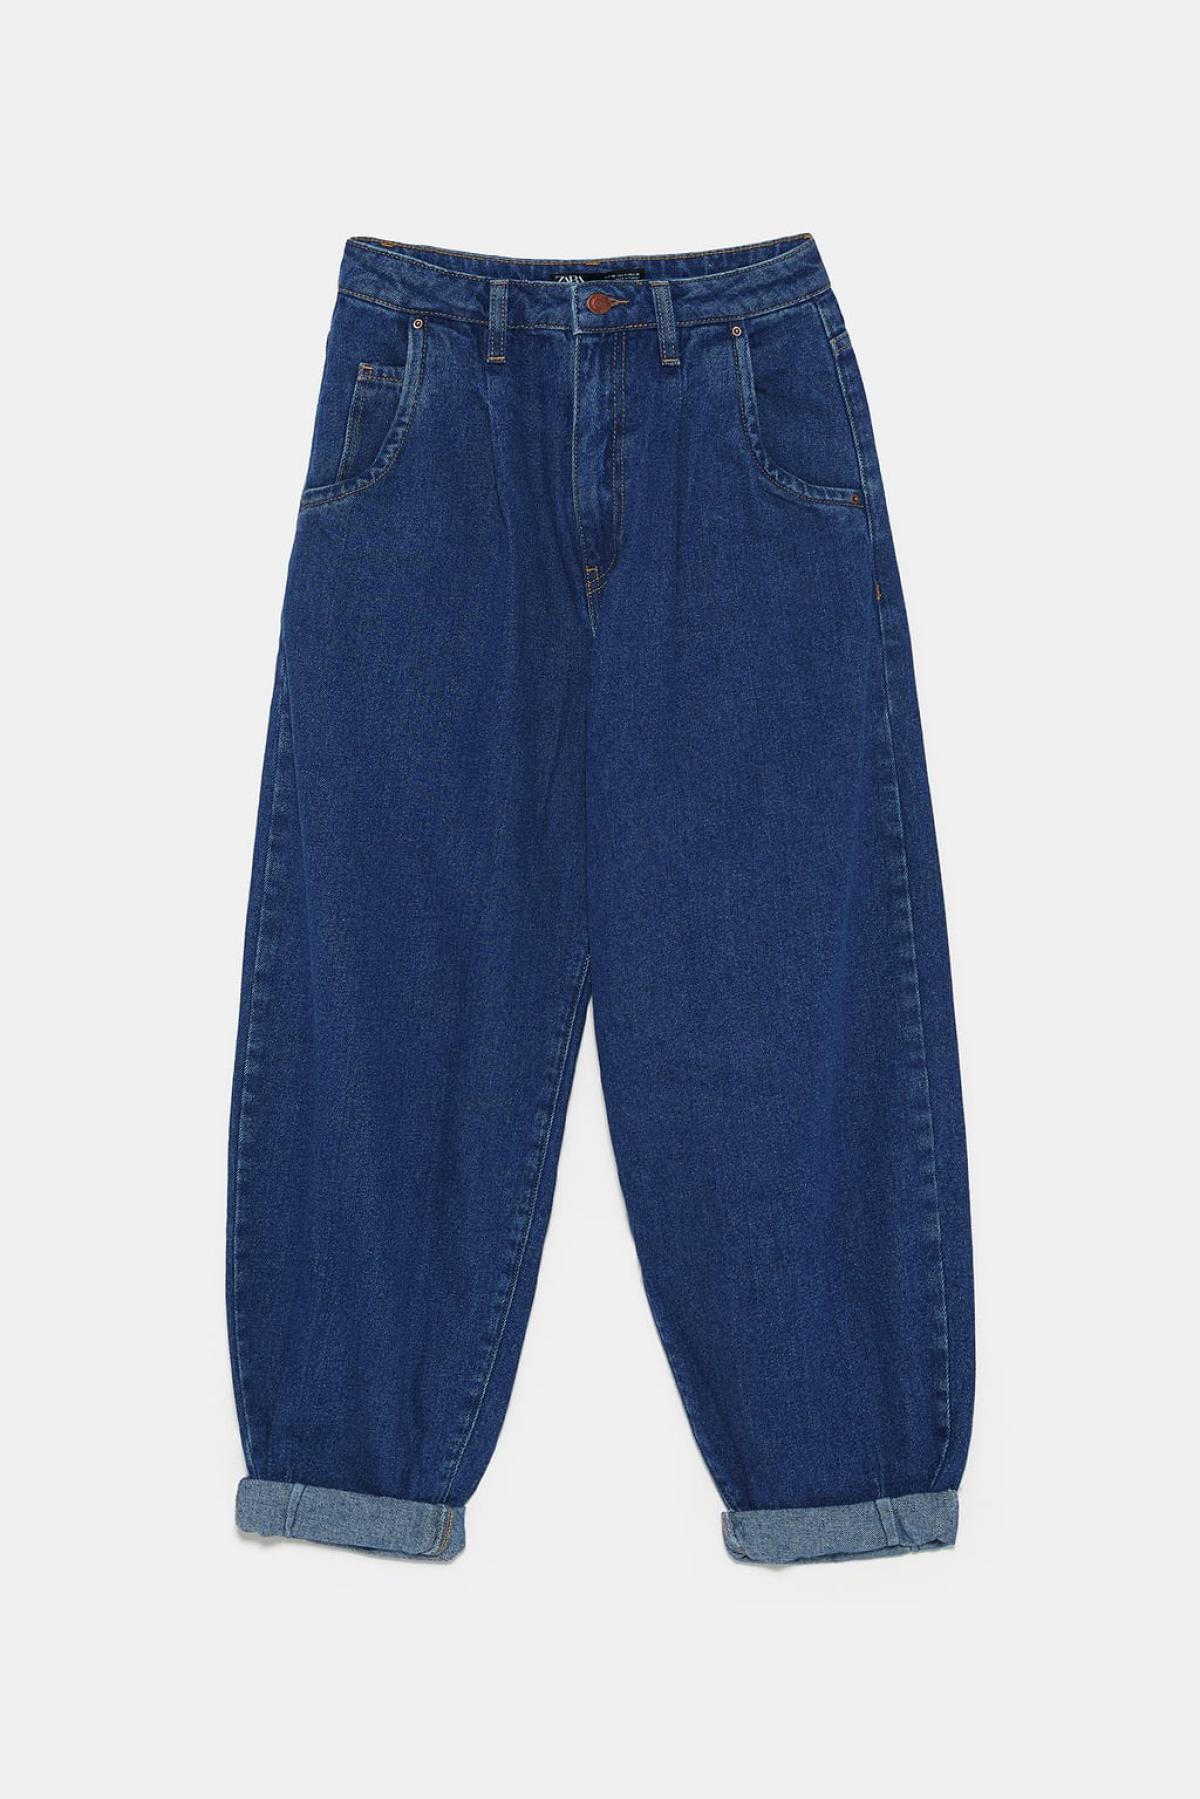 Le jean large à pinces bleu foncé